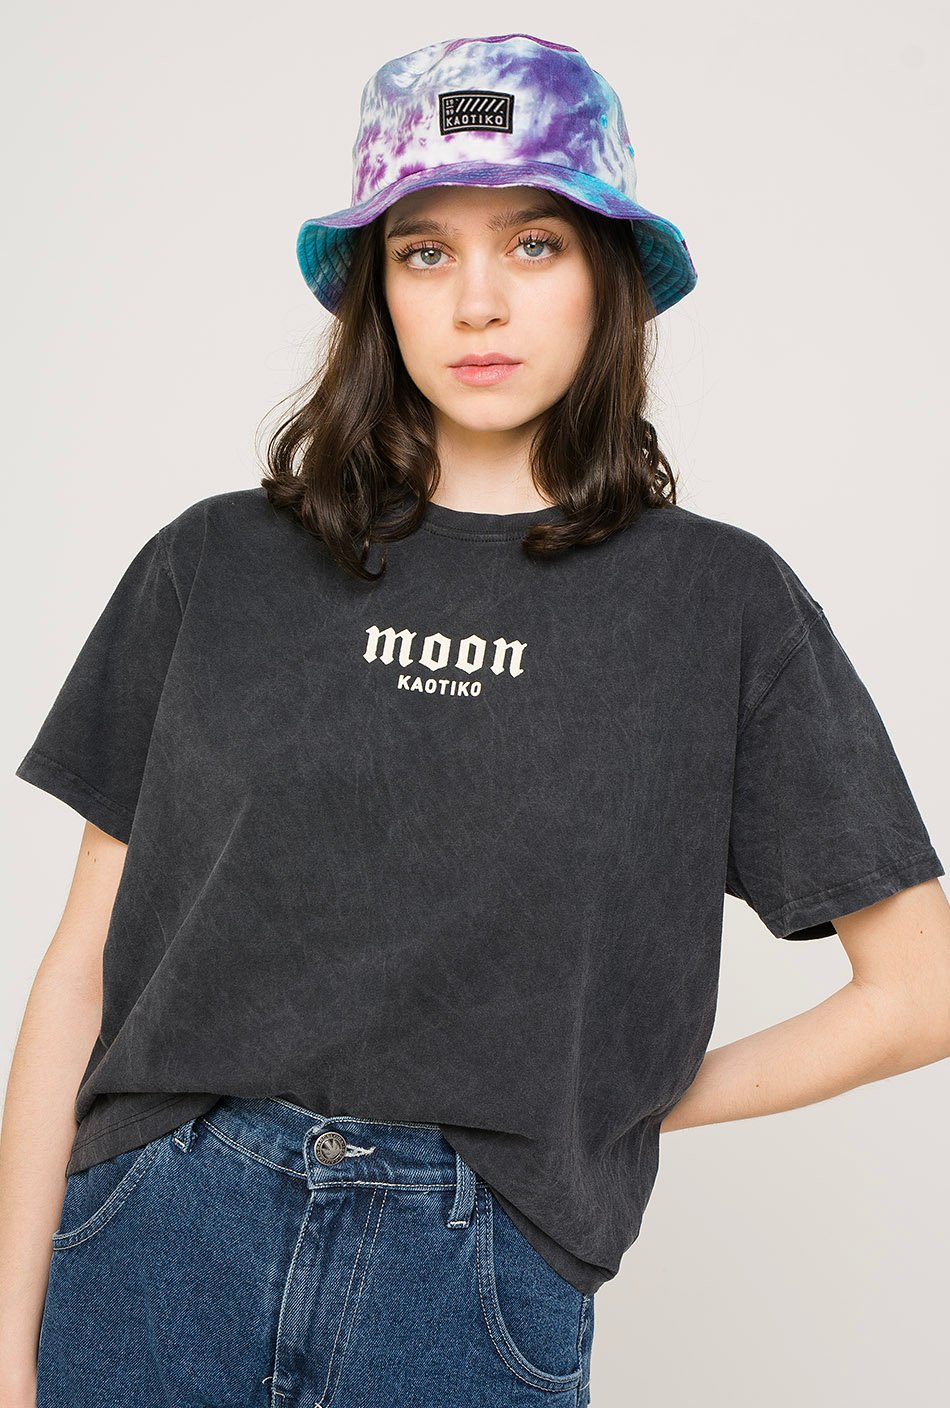 Camiseta Tie-dye Moon Negra